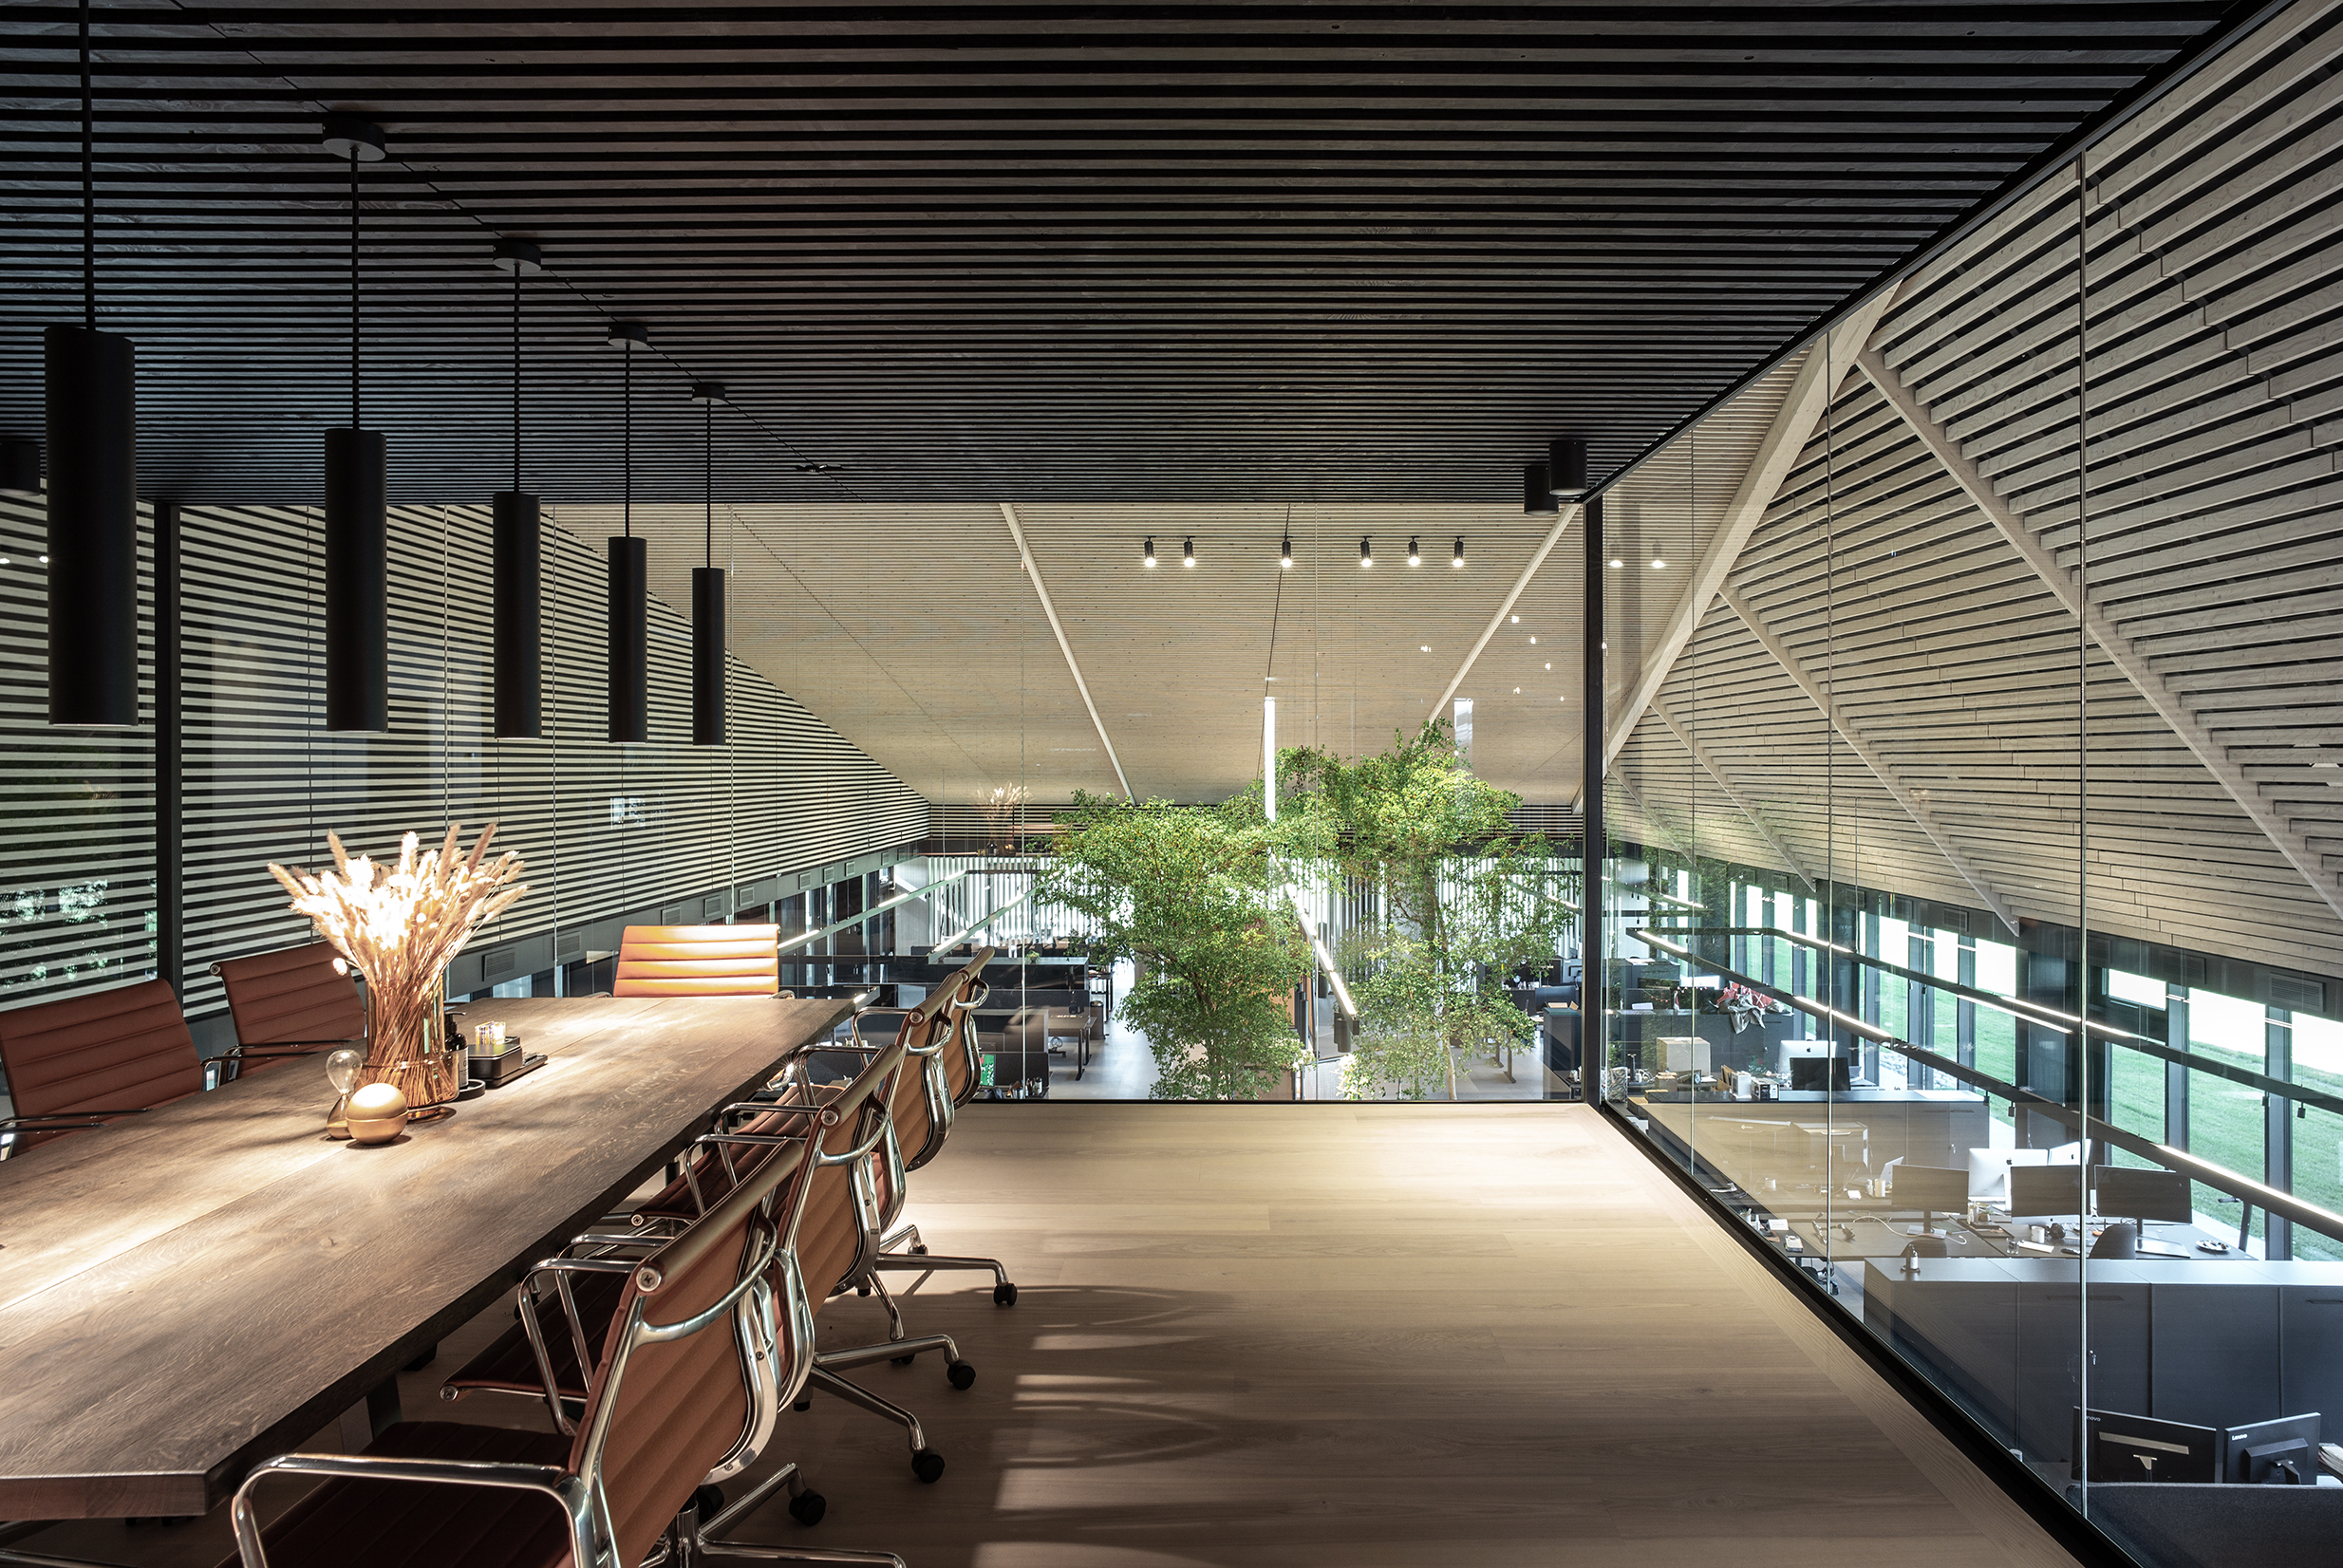 Stort mødelokale med transparente væge og sort træbeklædt loft